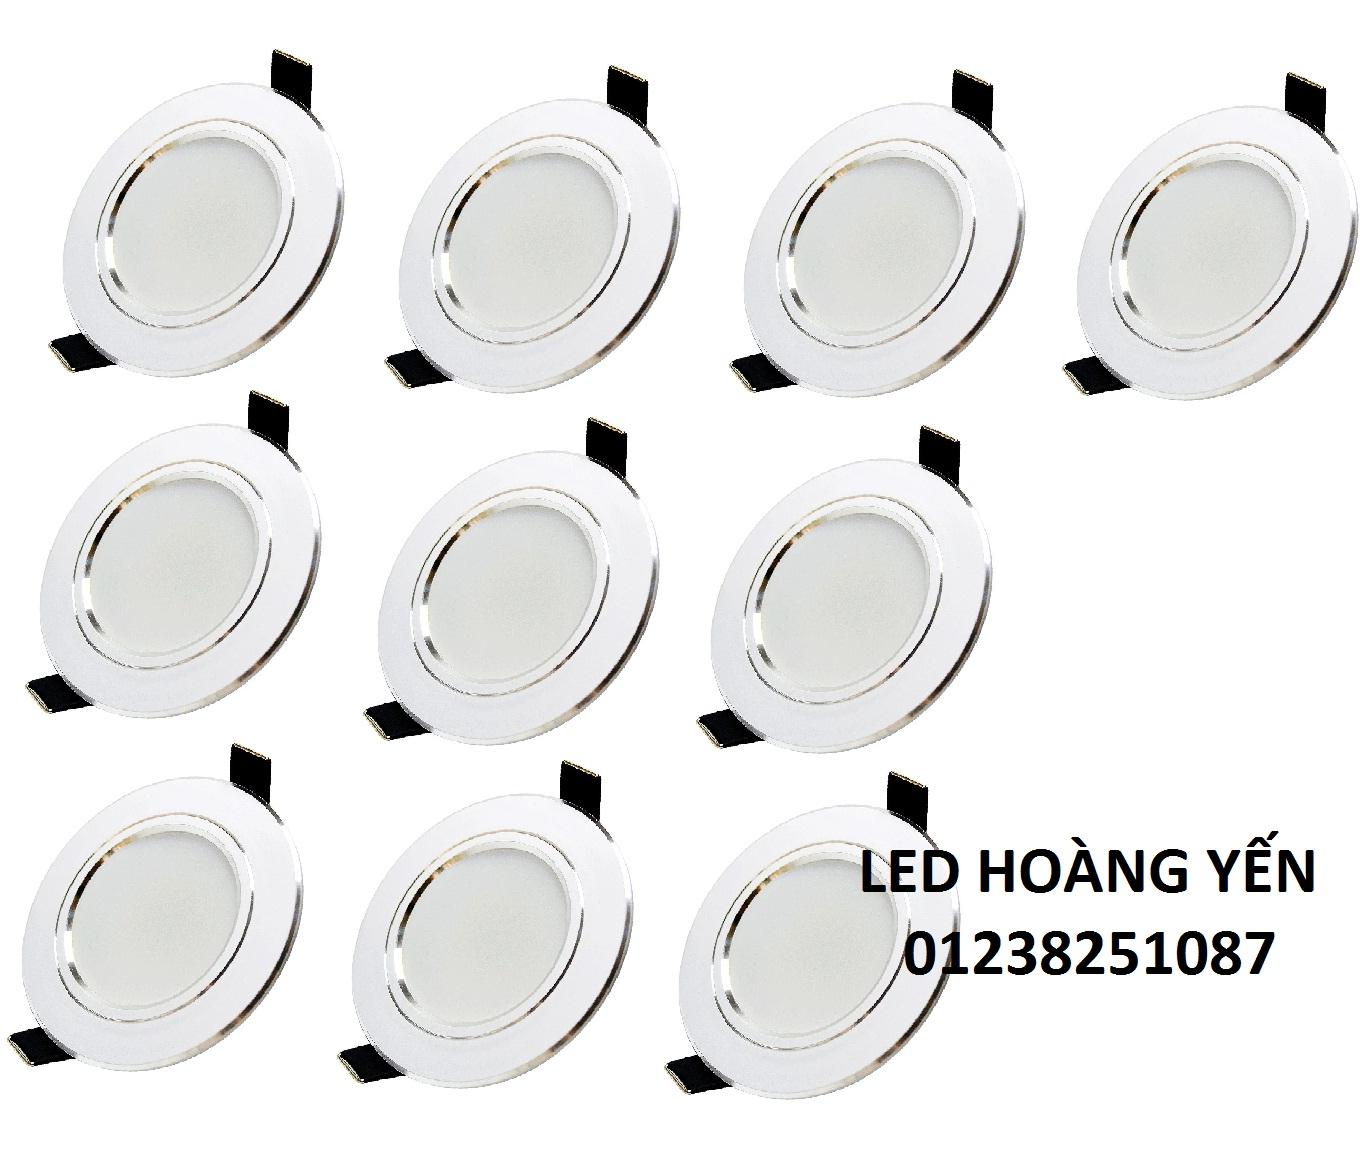 Bộ 10 đèn led âm trần viền bạc 7w tròn 3 màu 3 chế độ